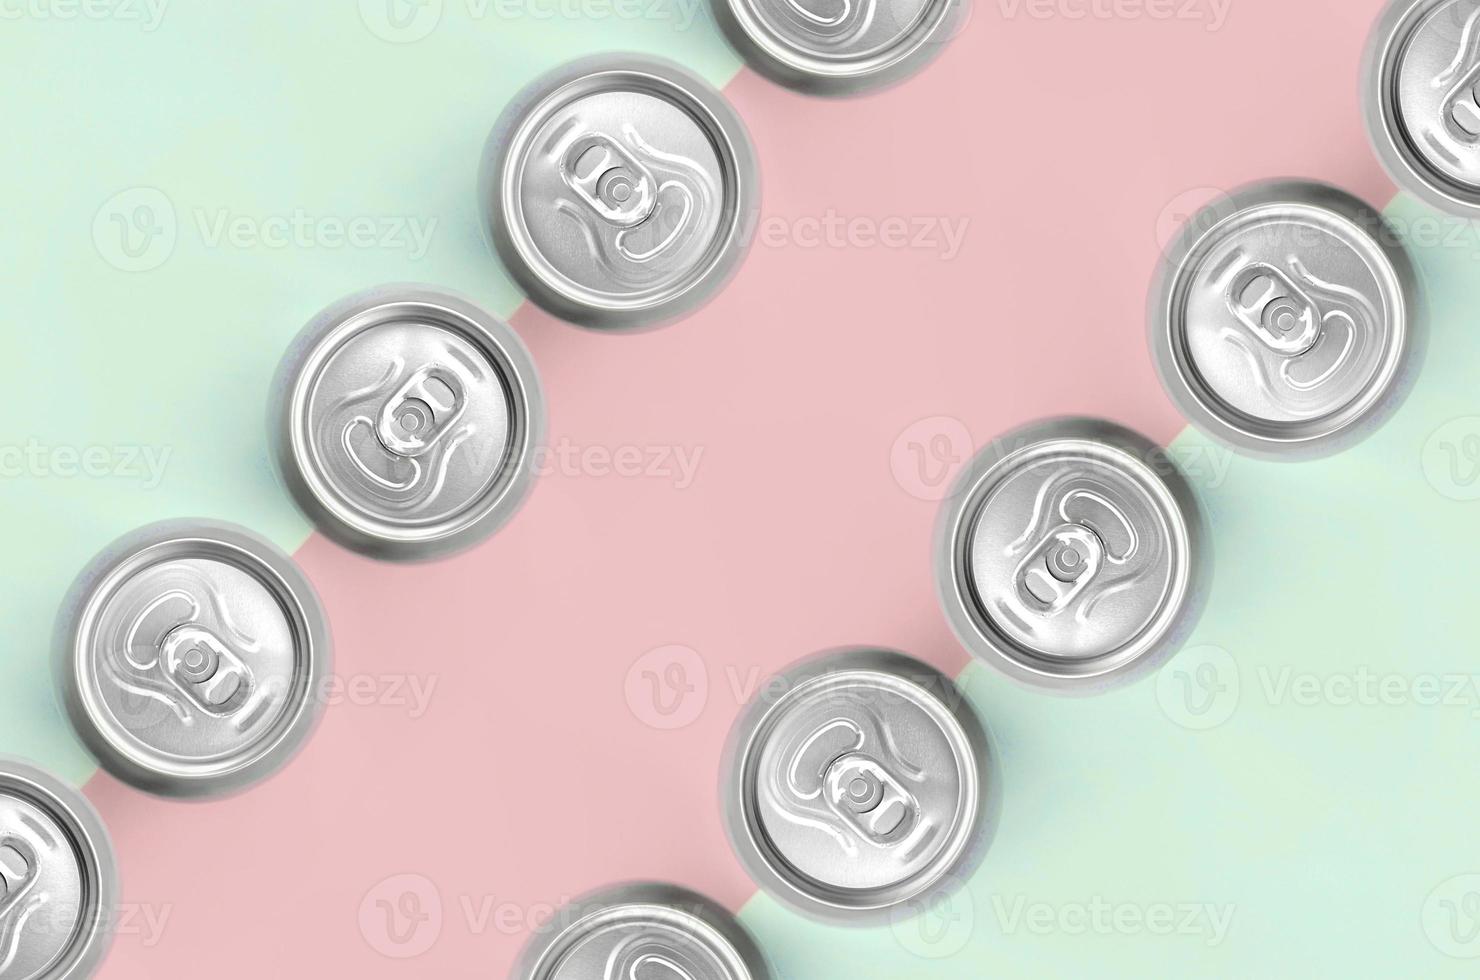 De nombreuses canettes de bière métalliques sur fond de texture de mode pastel turquoise et rose photo